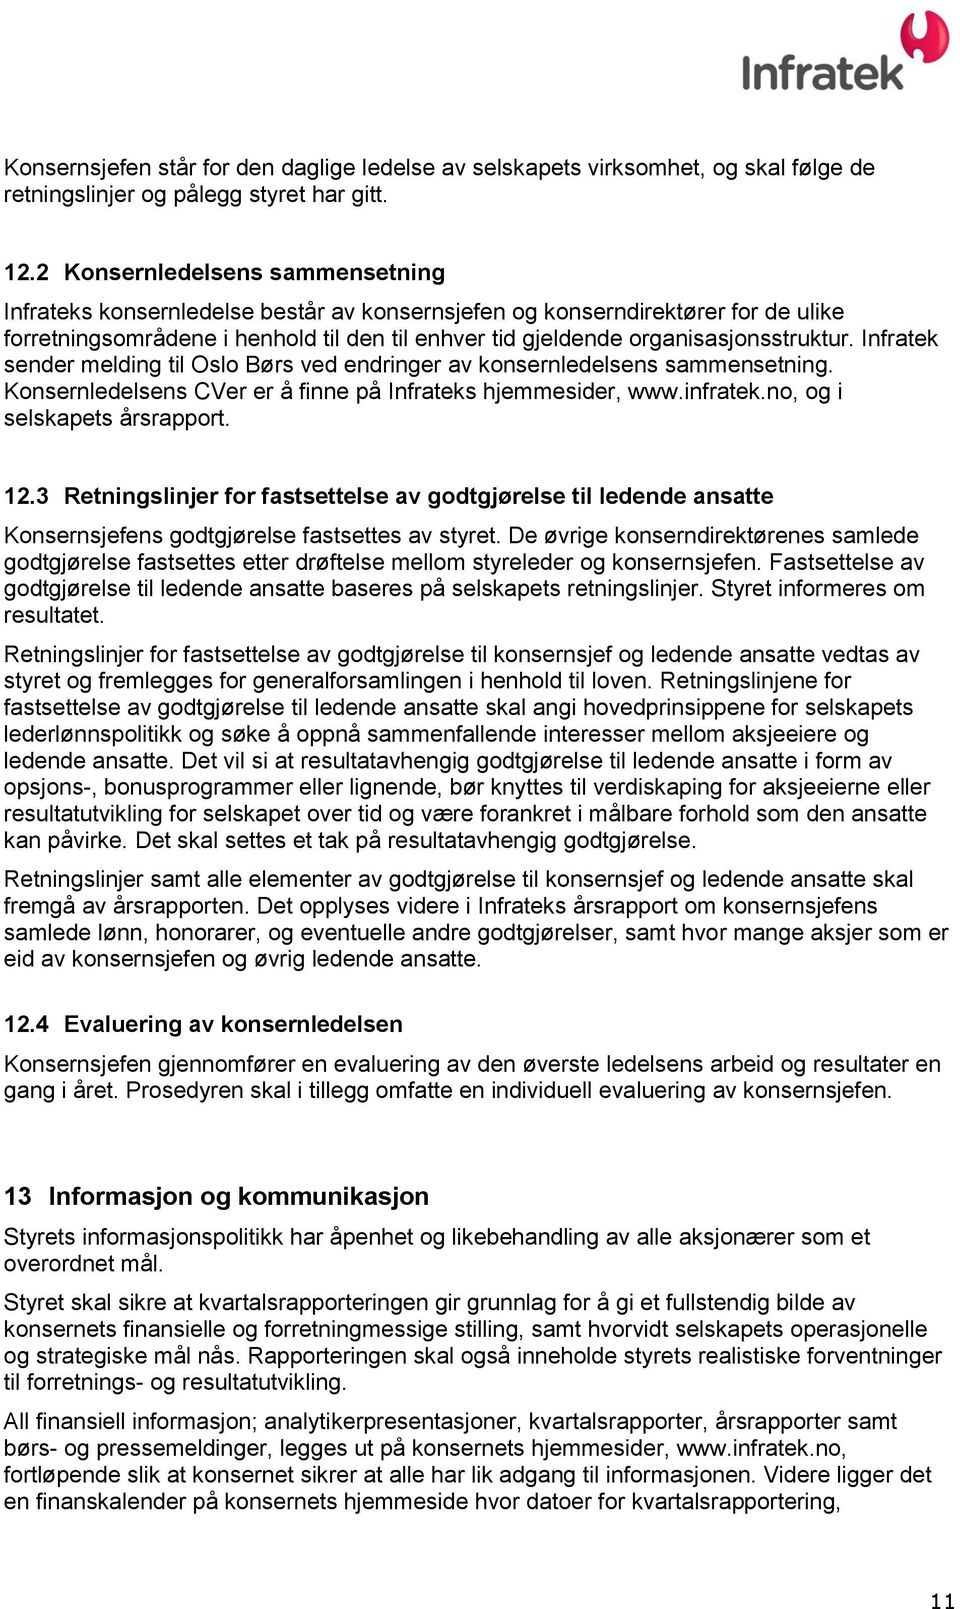 organisasjonsstruktur. Infratek sender melding til Oslo Børs ved endringer av konsernledelsens sammensetning. Konsernledelsens CVer er å finne på Infrateks hjemmesider, www.infratek.